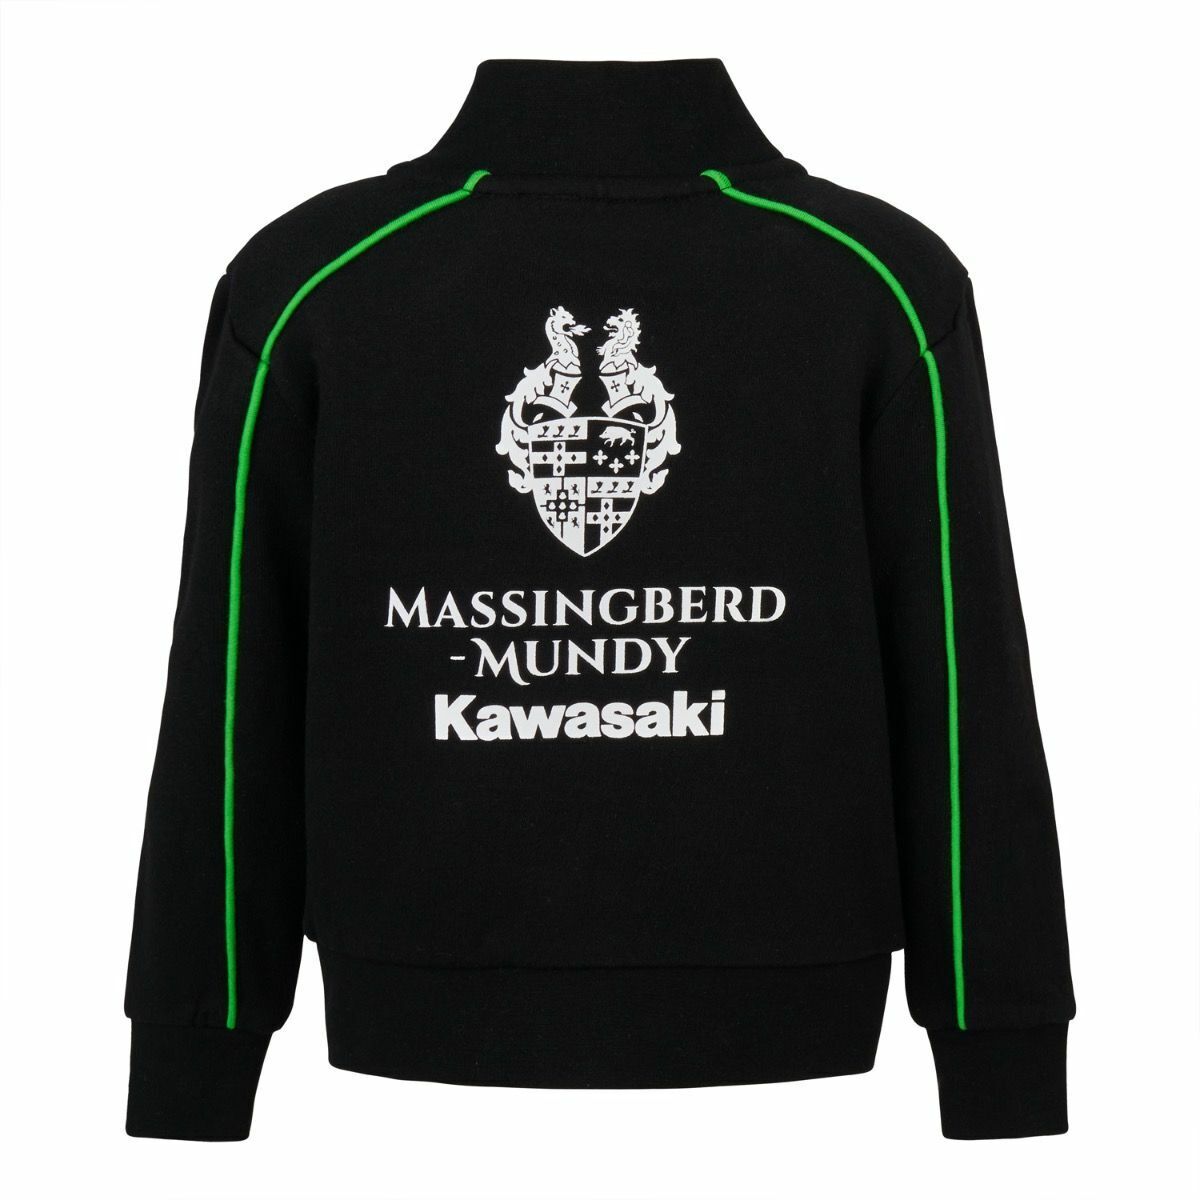 Official Massingberd Mundy Kawasaki Team Baby's Jacket - 20Kaw-Bj